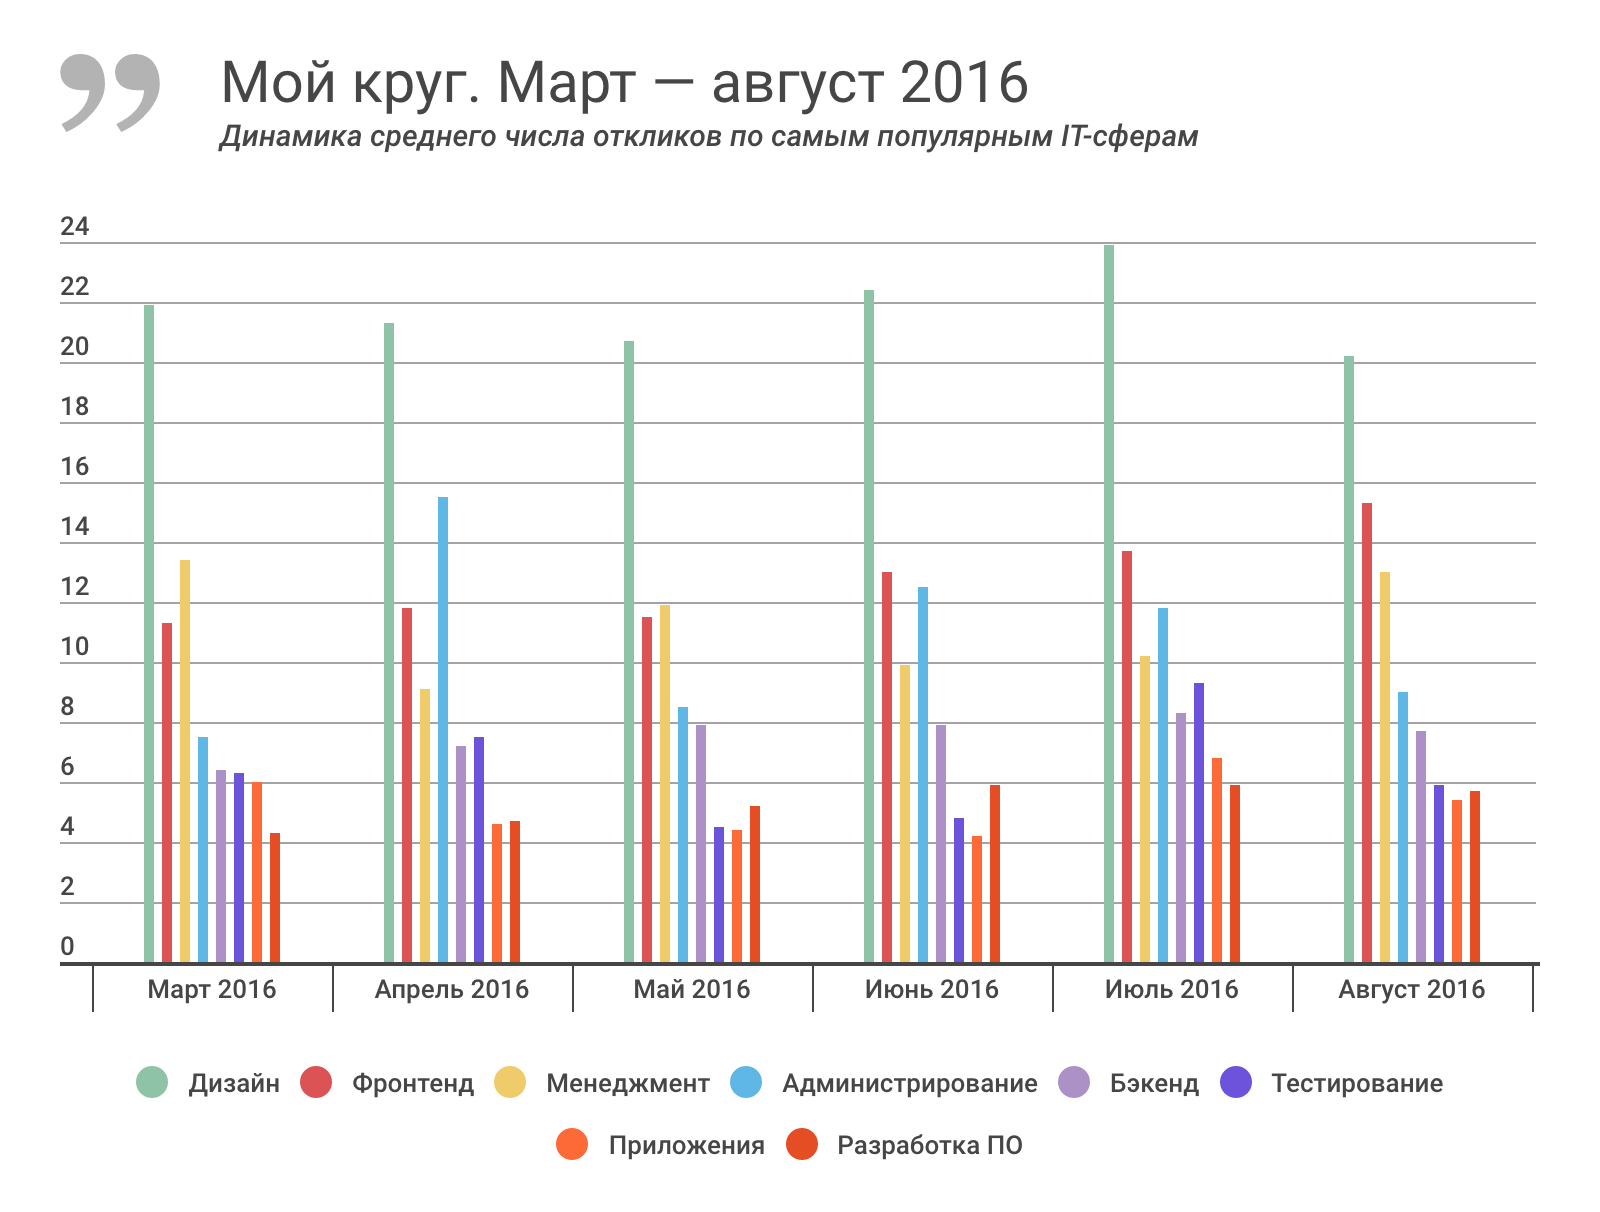 Отчет о результатах «Моего круга» за август 2016, и самые популярные вакансии месяца - 2